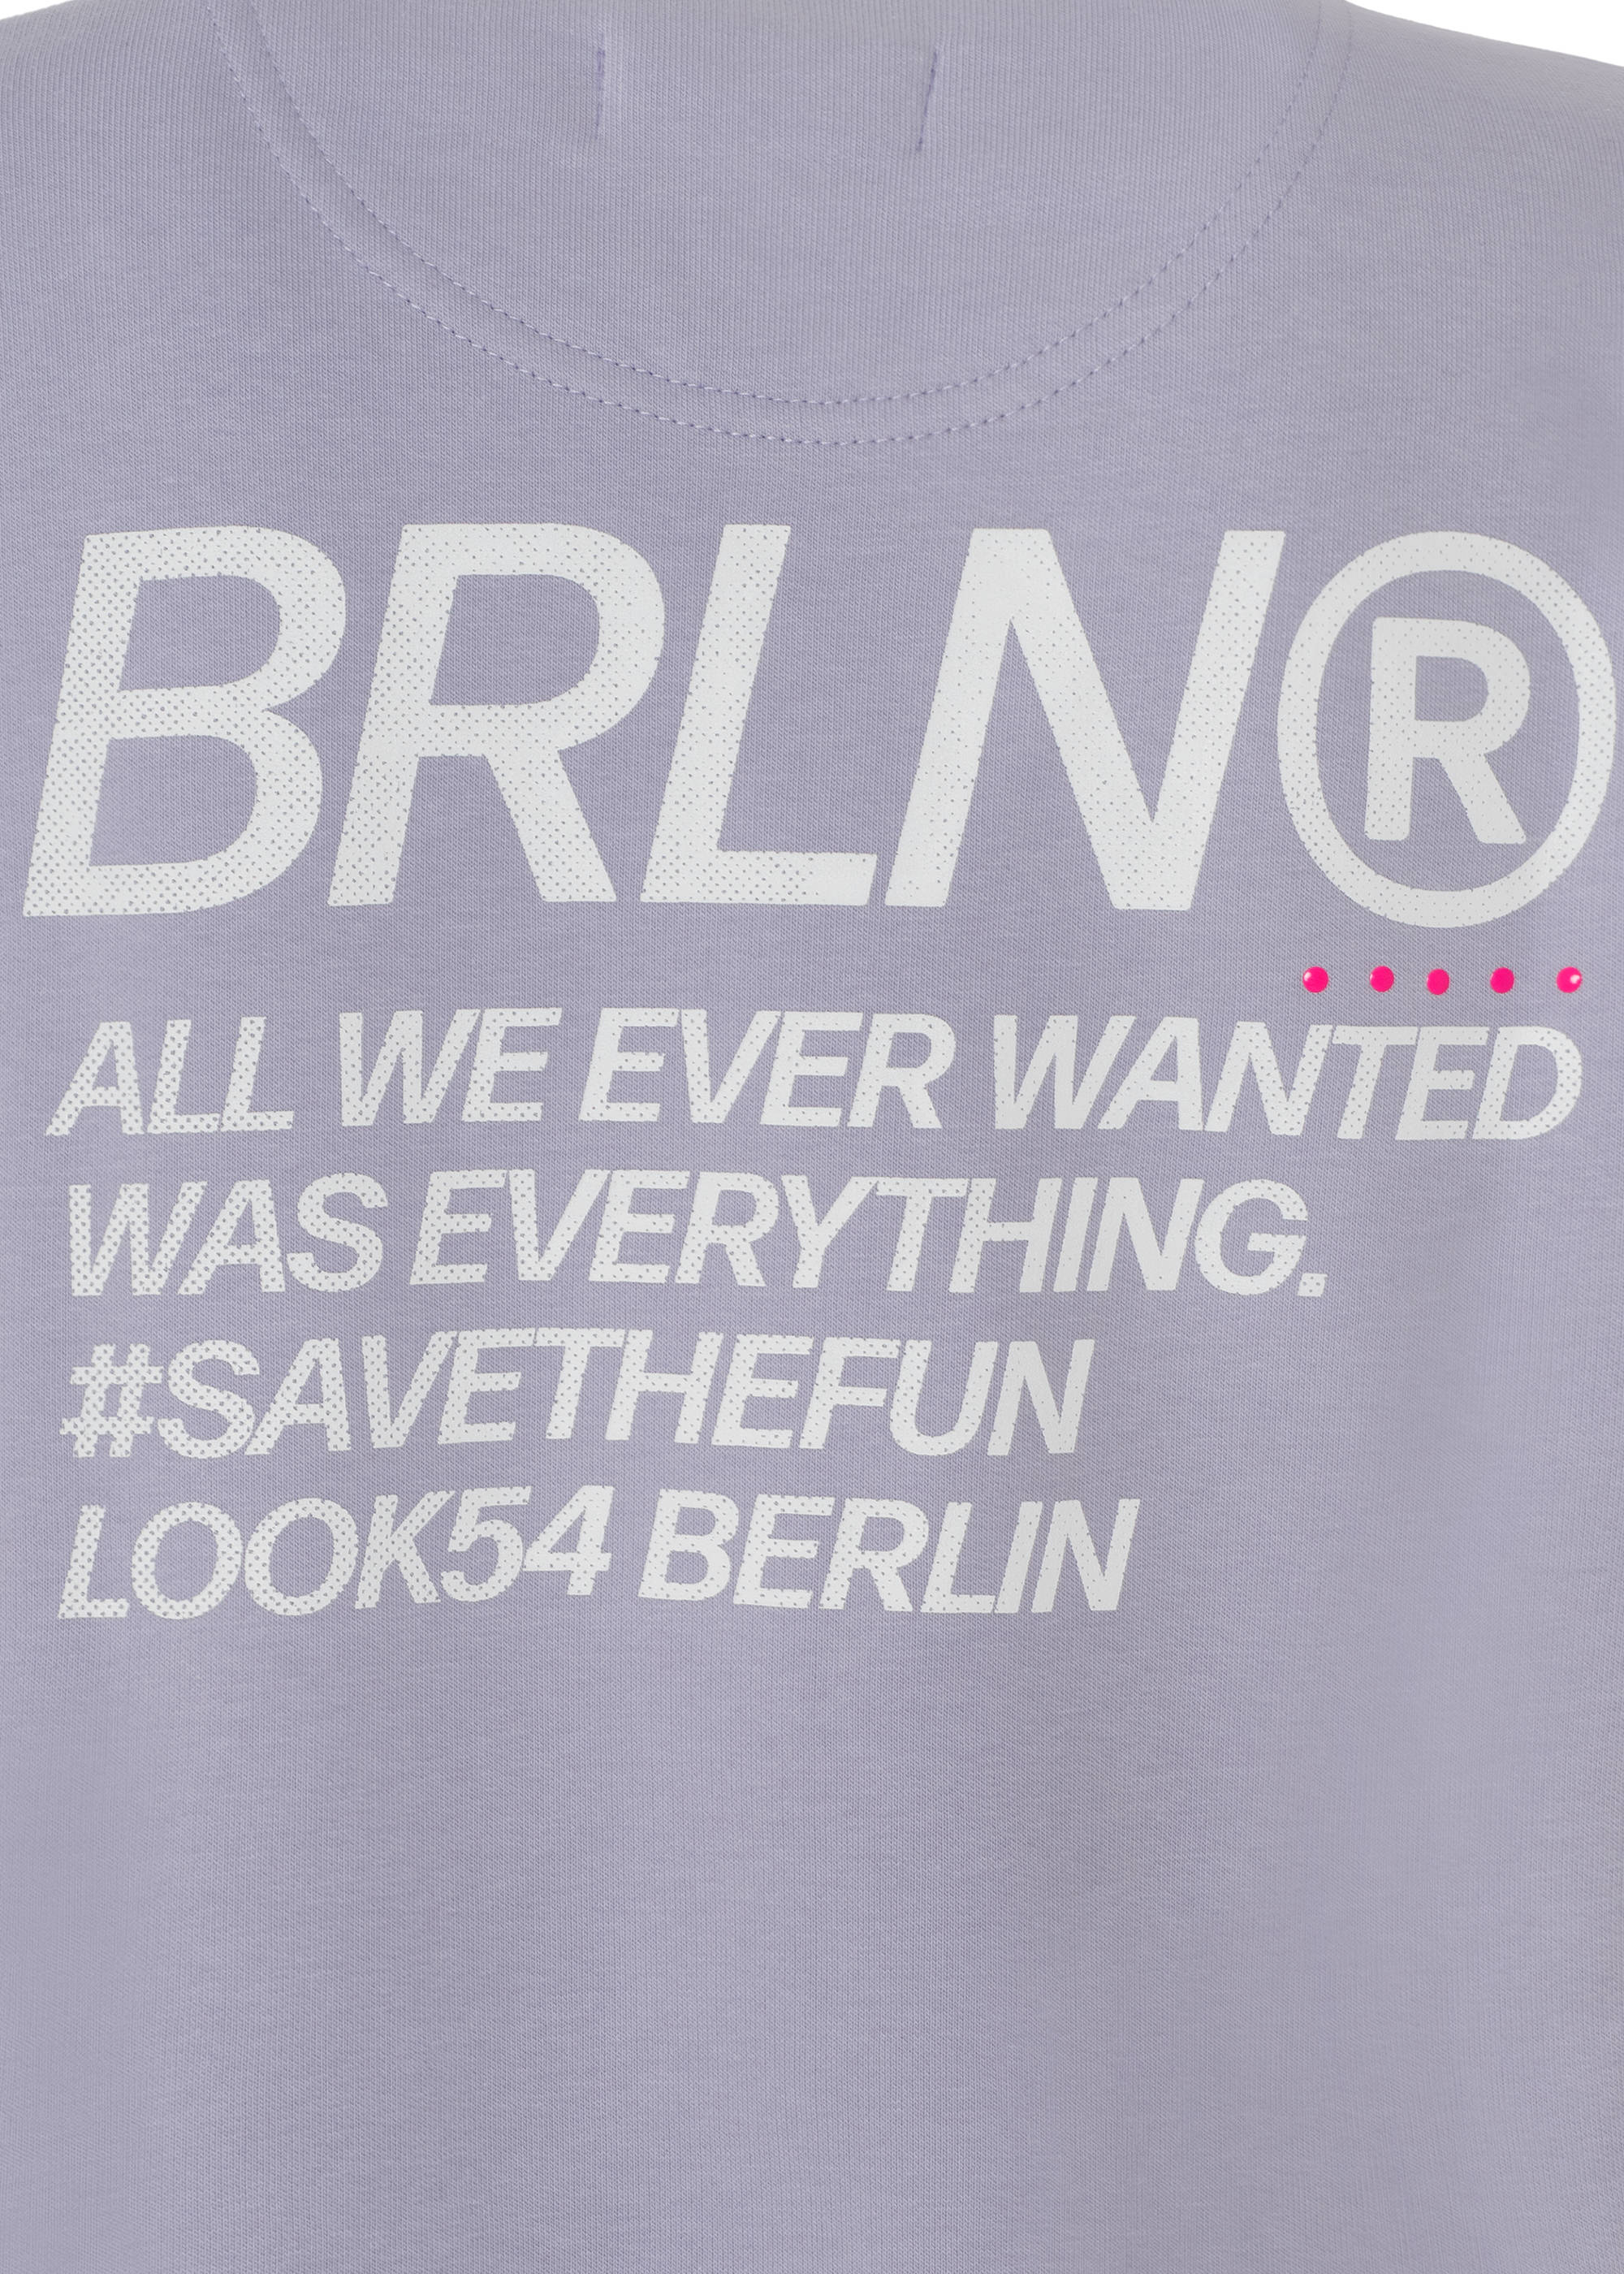 BRLN® Save the fun Sweater